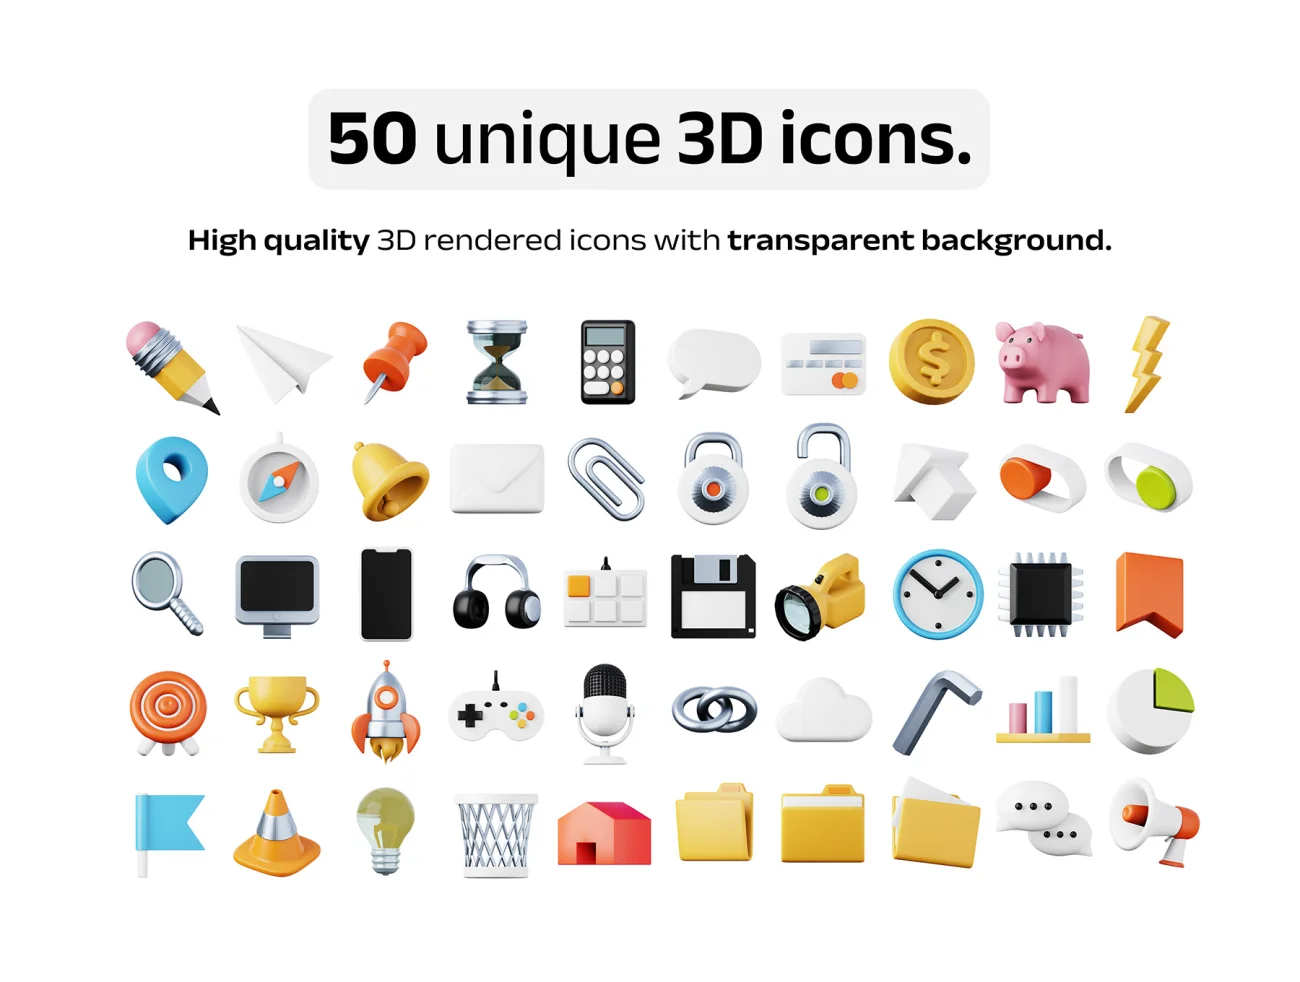 100款高质量表情天气食品3D图标模型素材 50 unique 3D icons .psd .figma .procreate插图7